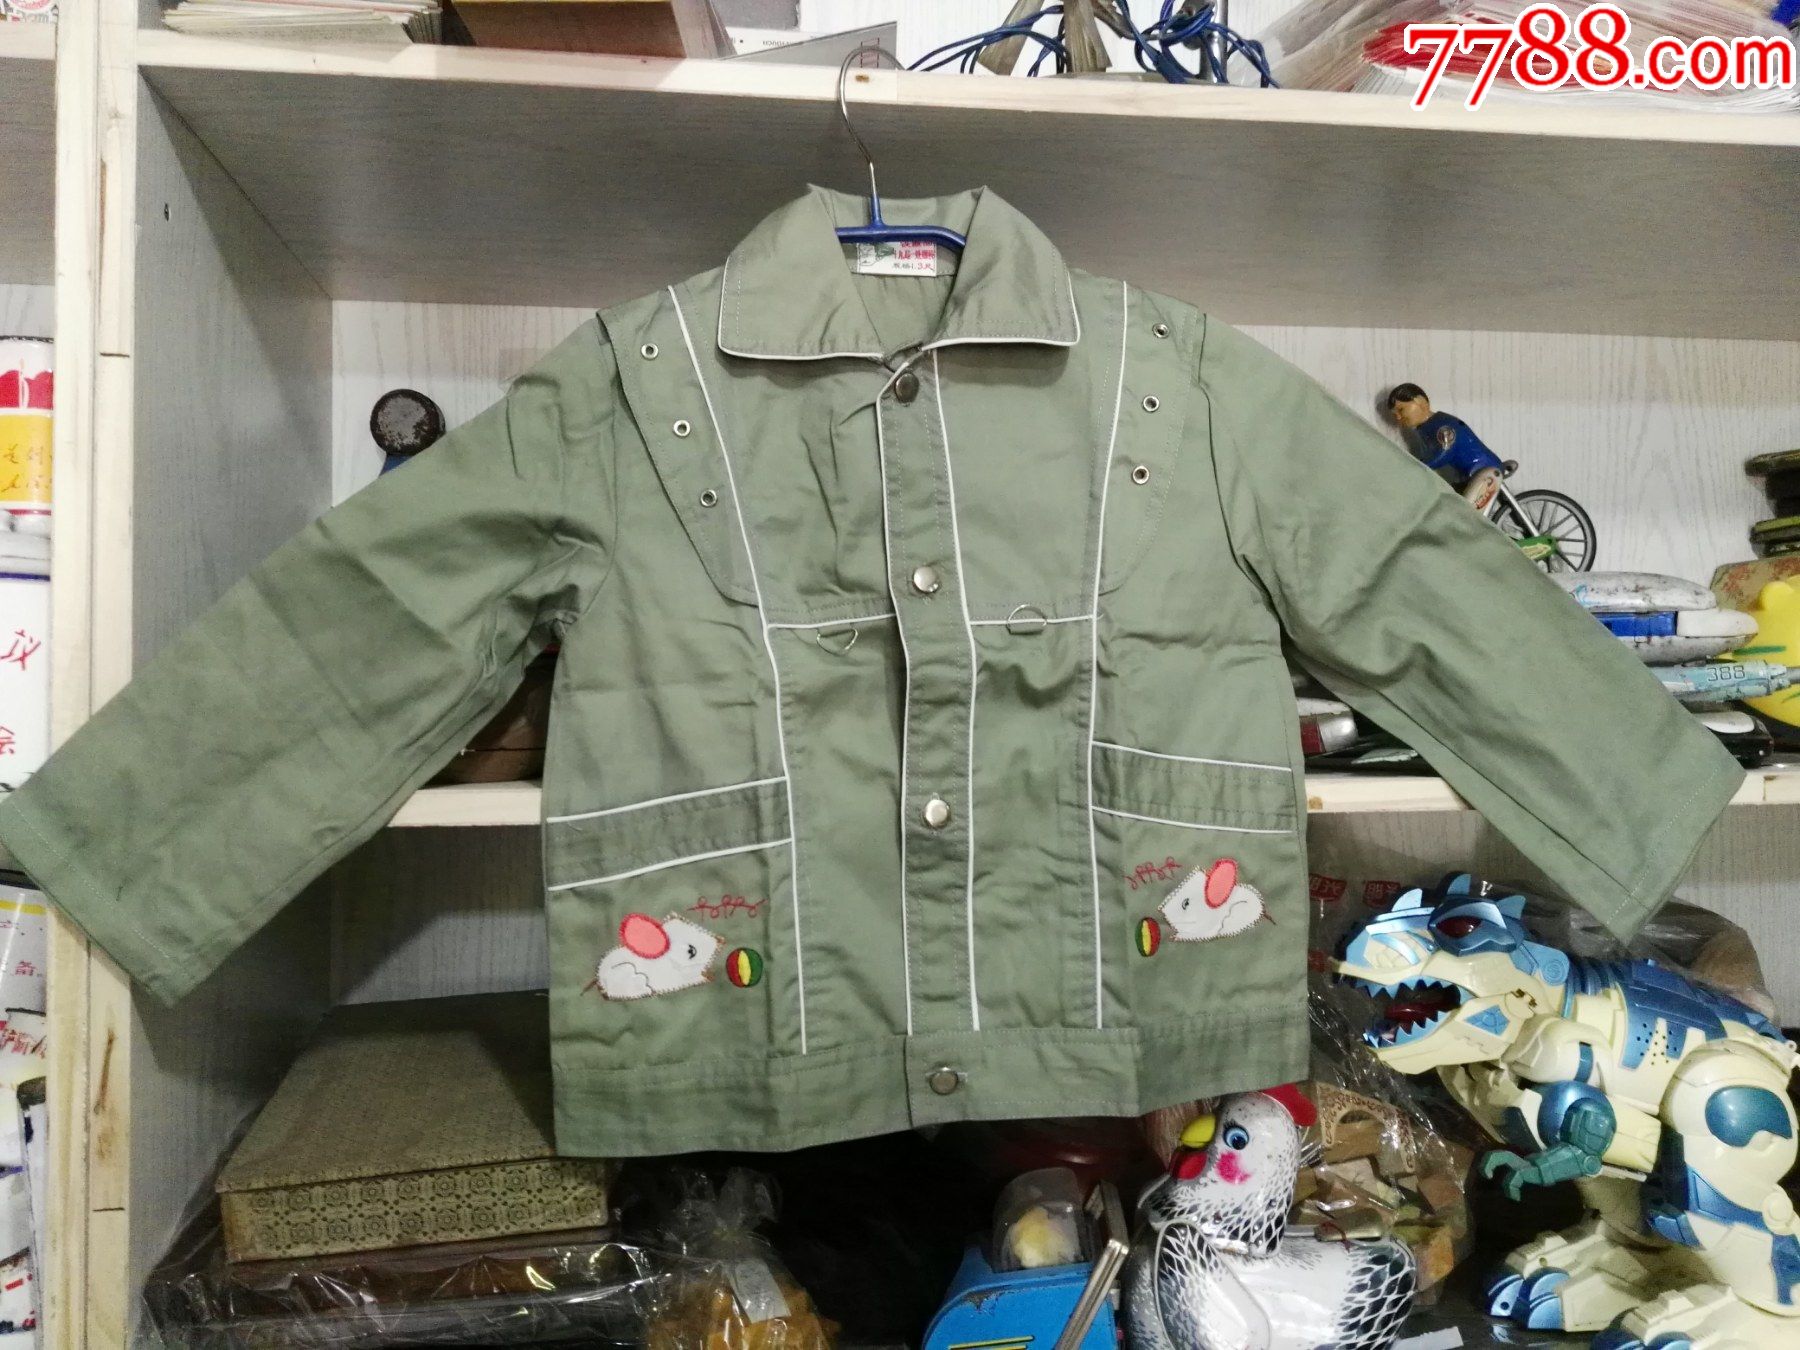 90年代铁道部第十九局一处服装厂制新式童装10套,10元1套,售100元